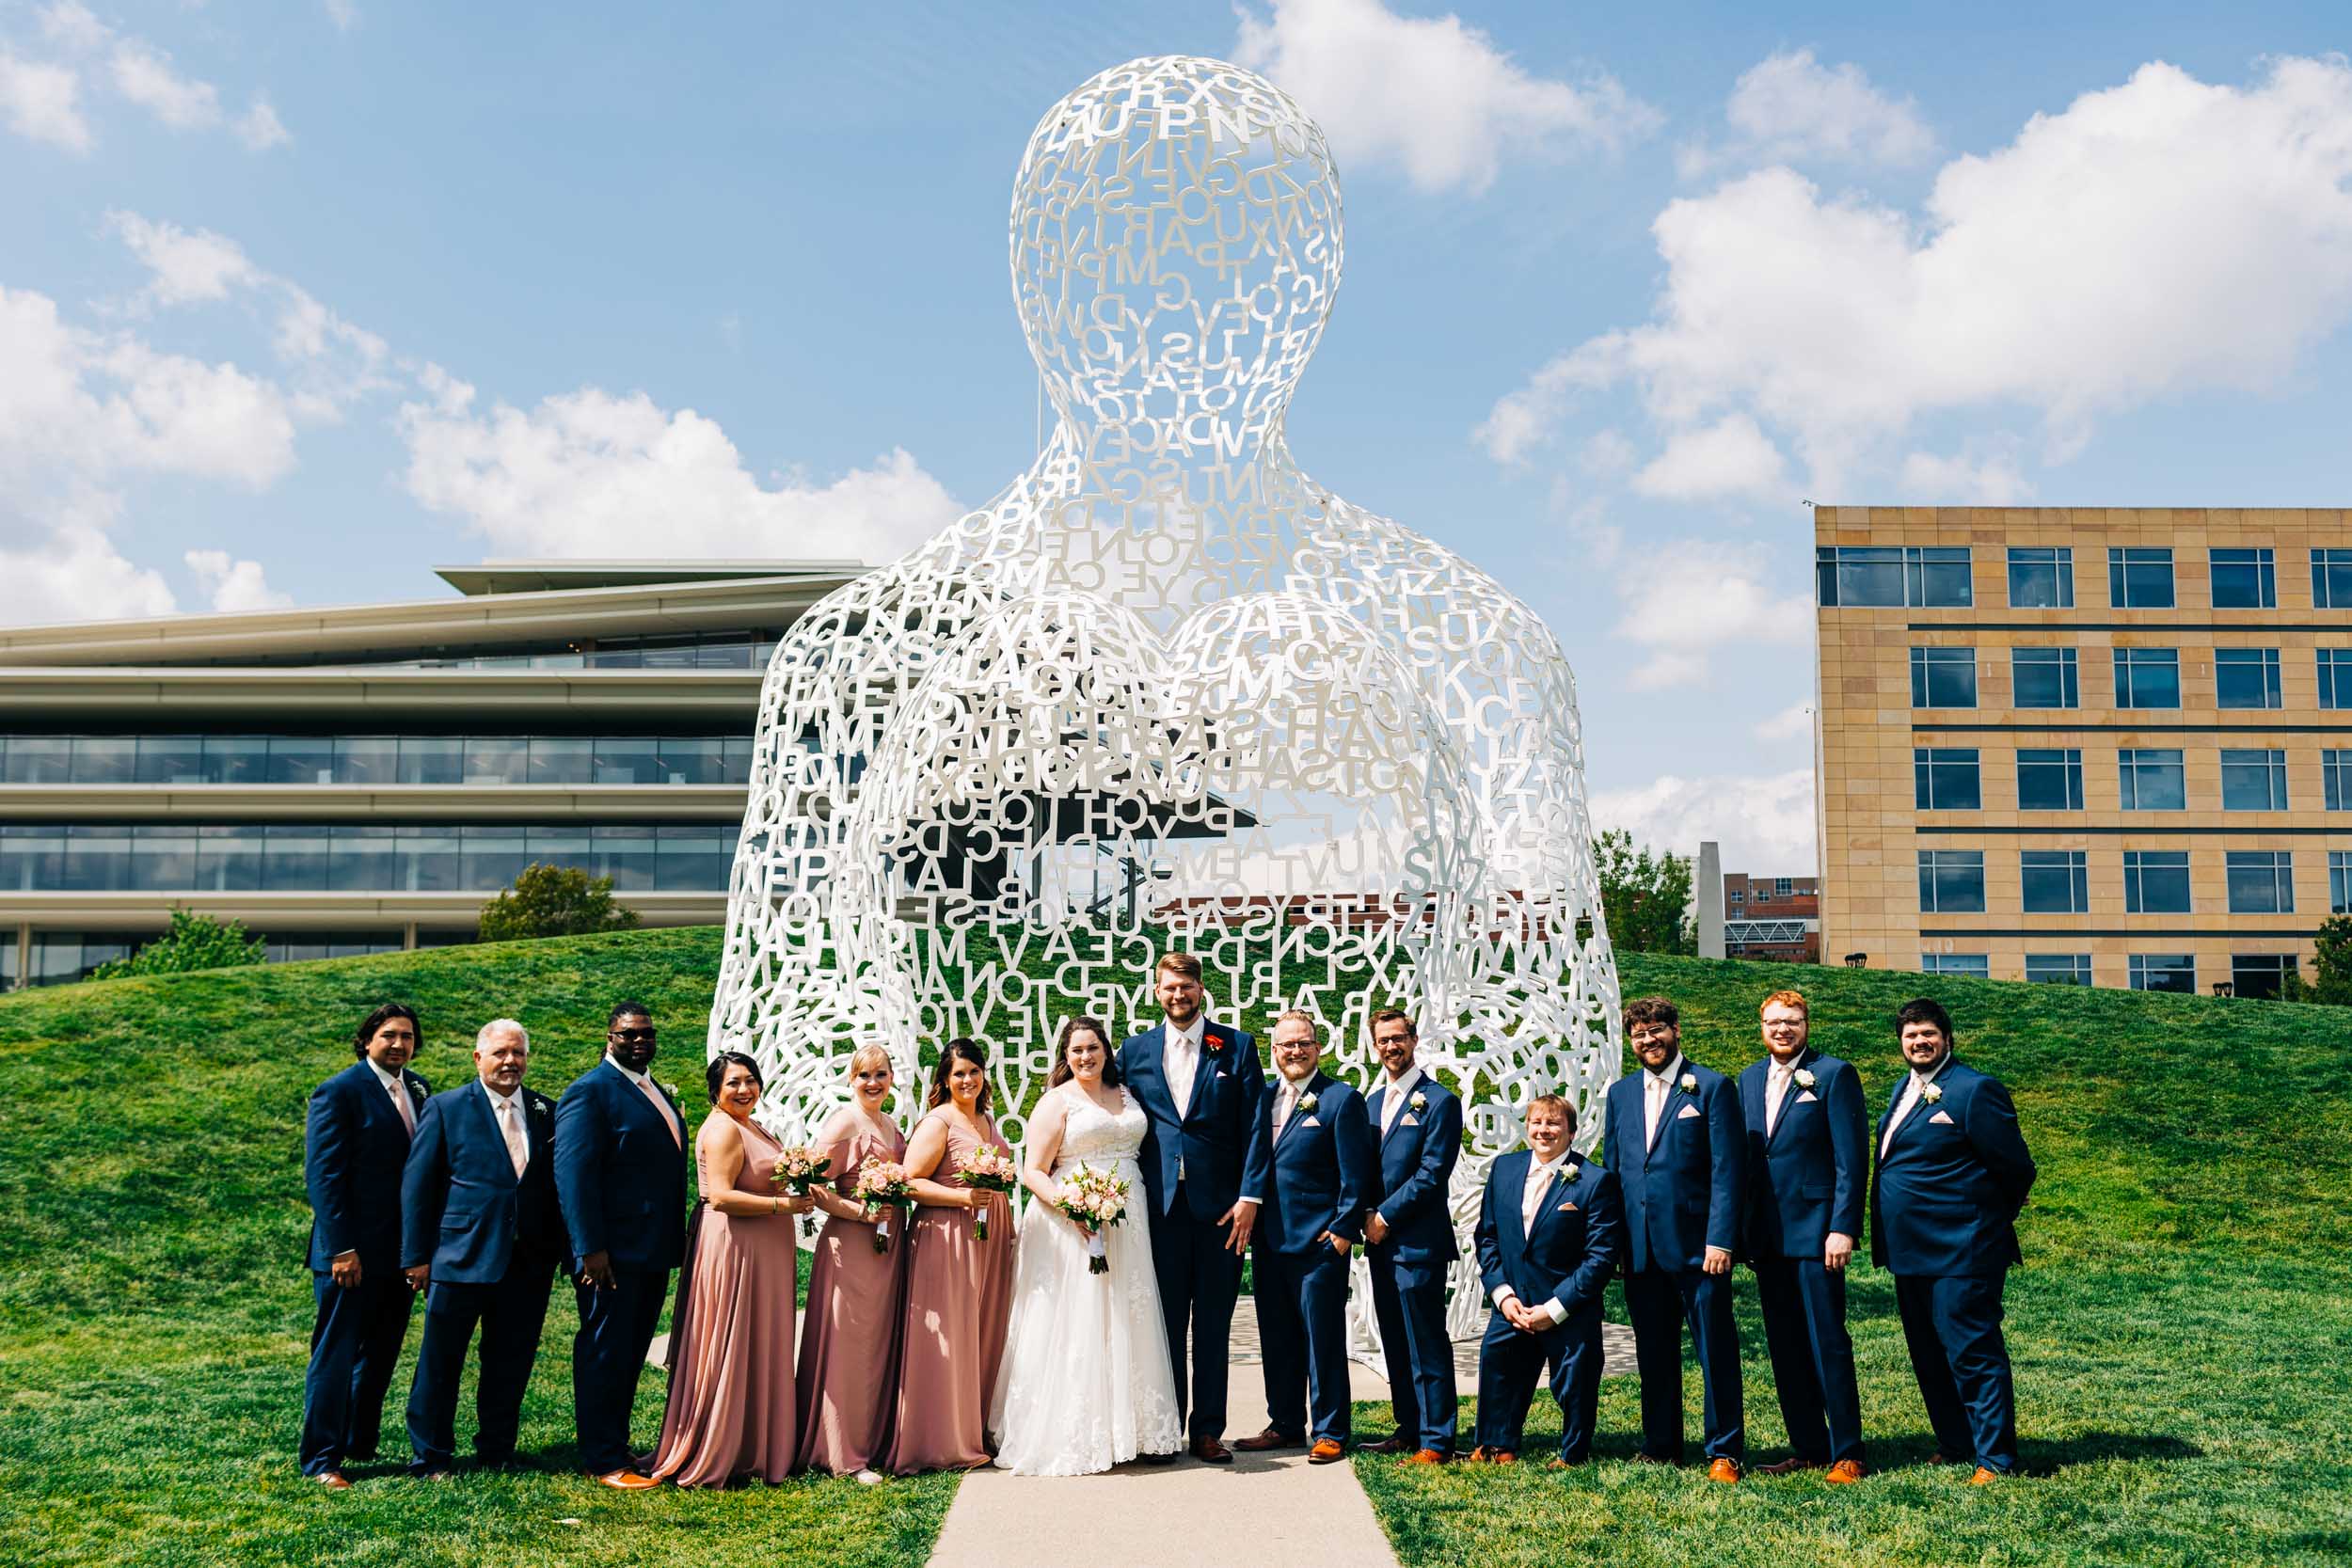 Sculpture Park Des Moines wedding photos